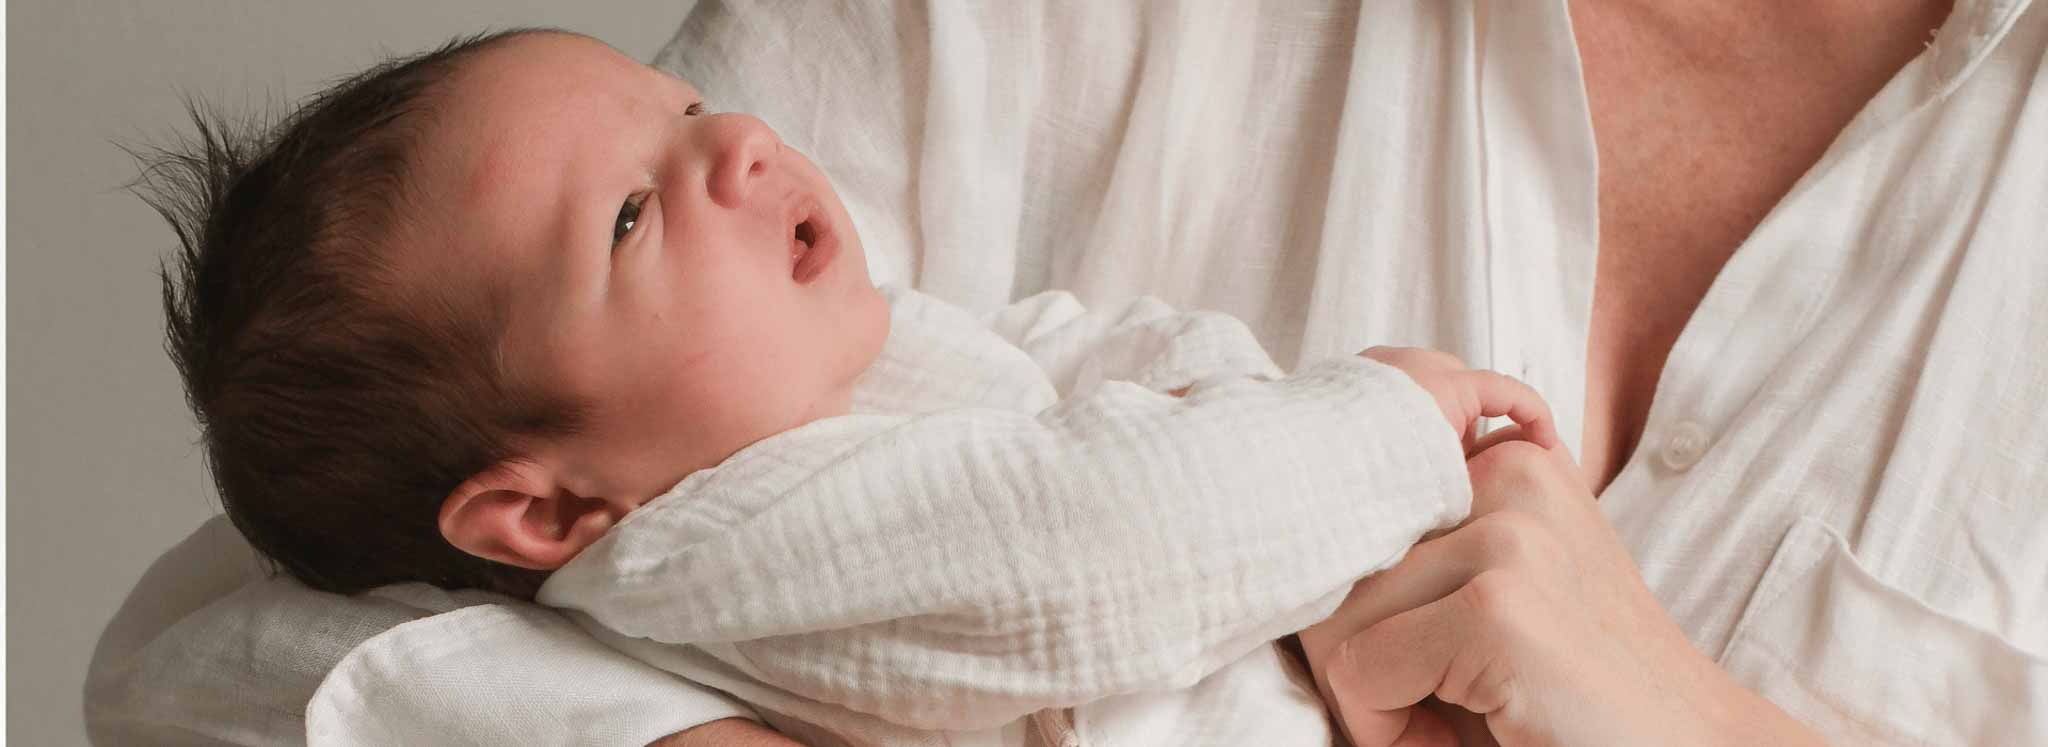 Los cólicos del recién nacido: Qué son y como aliviarlos